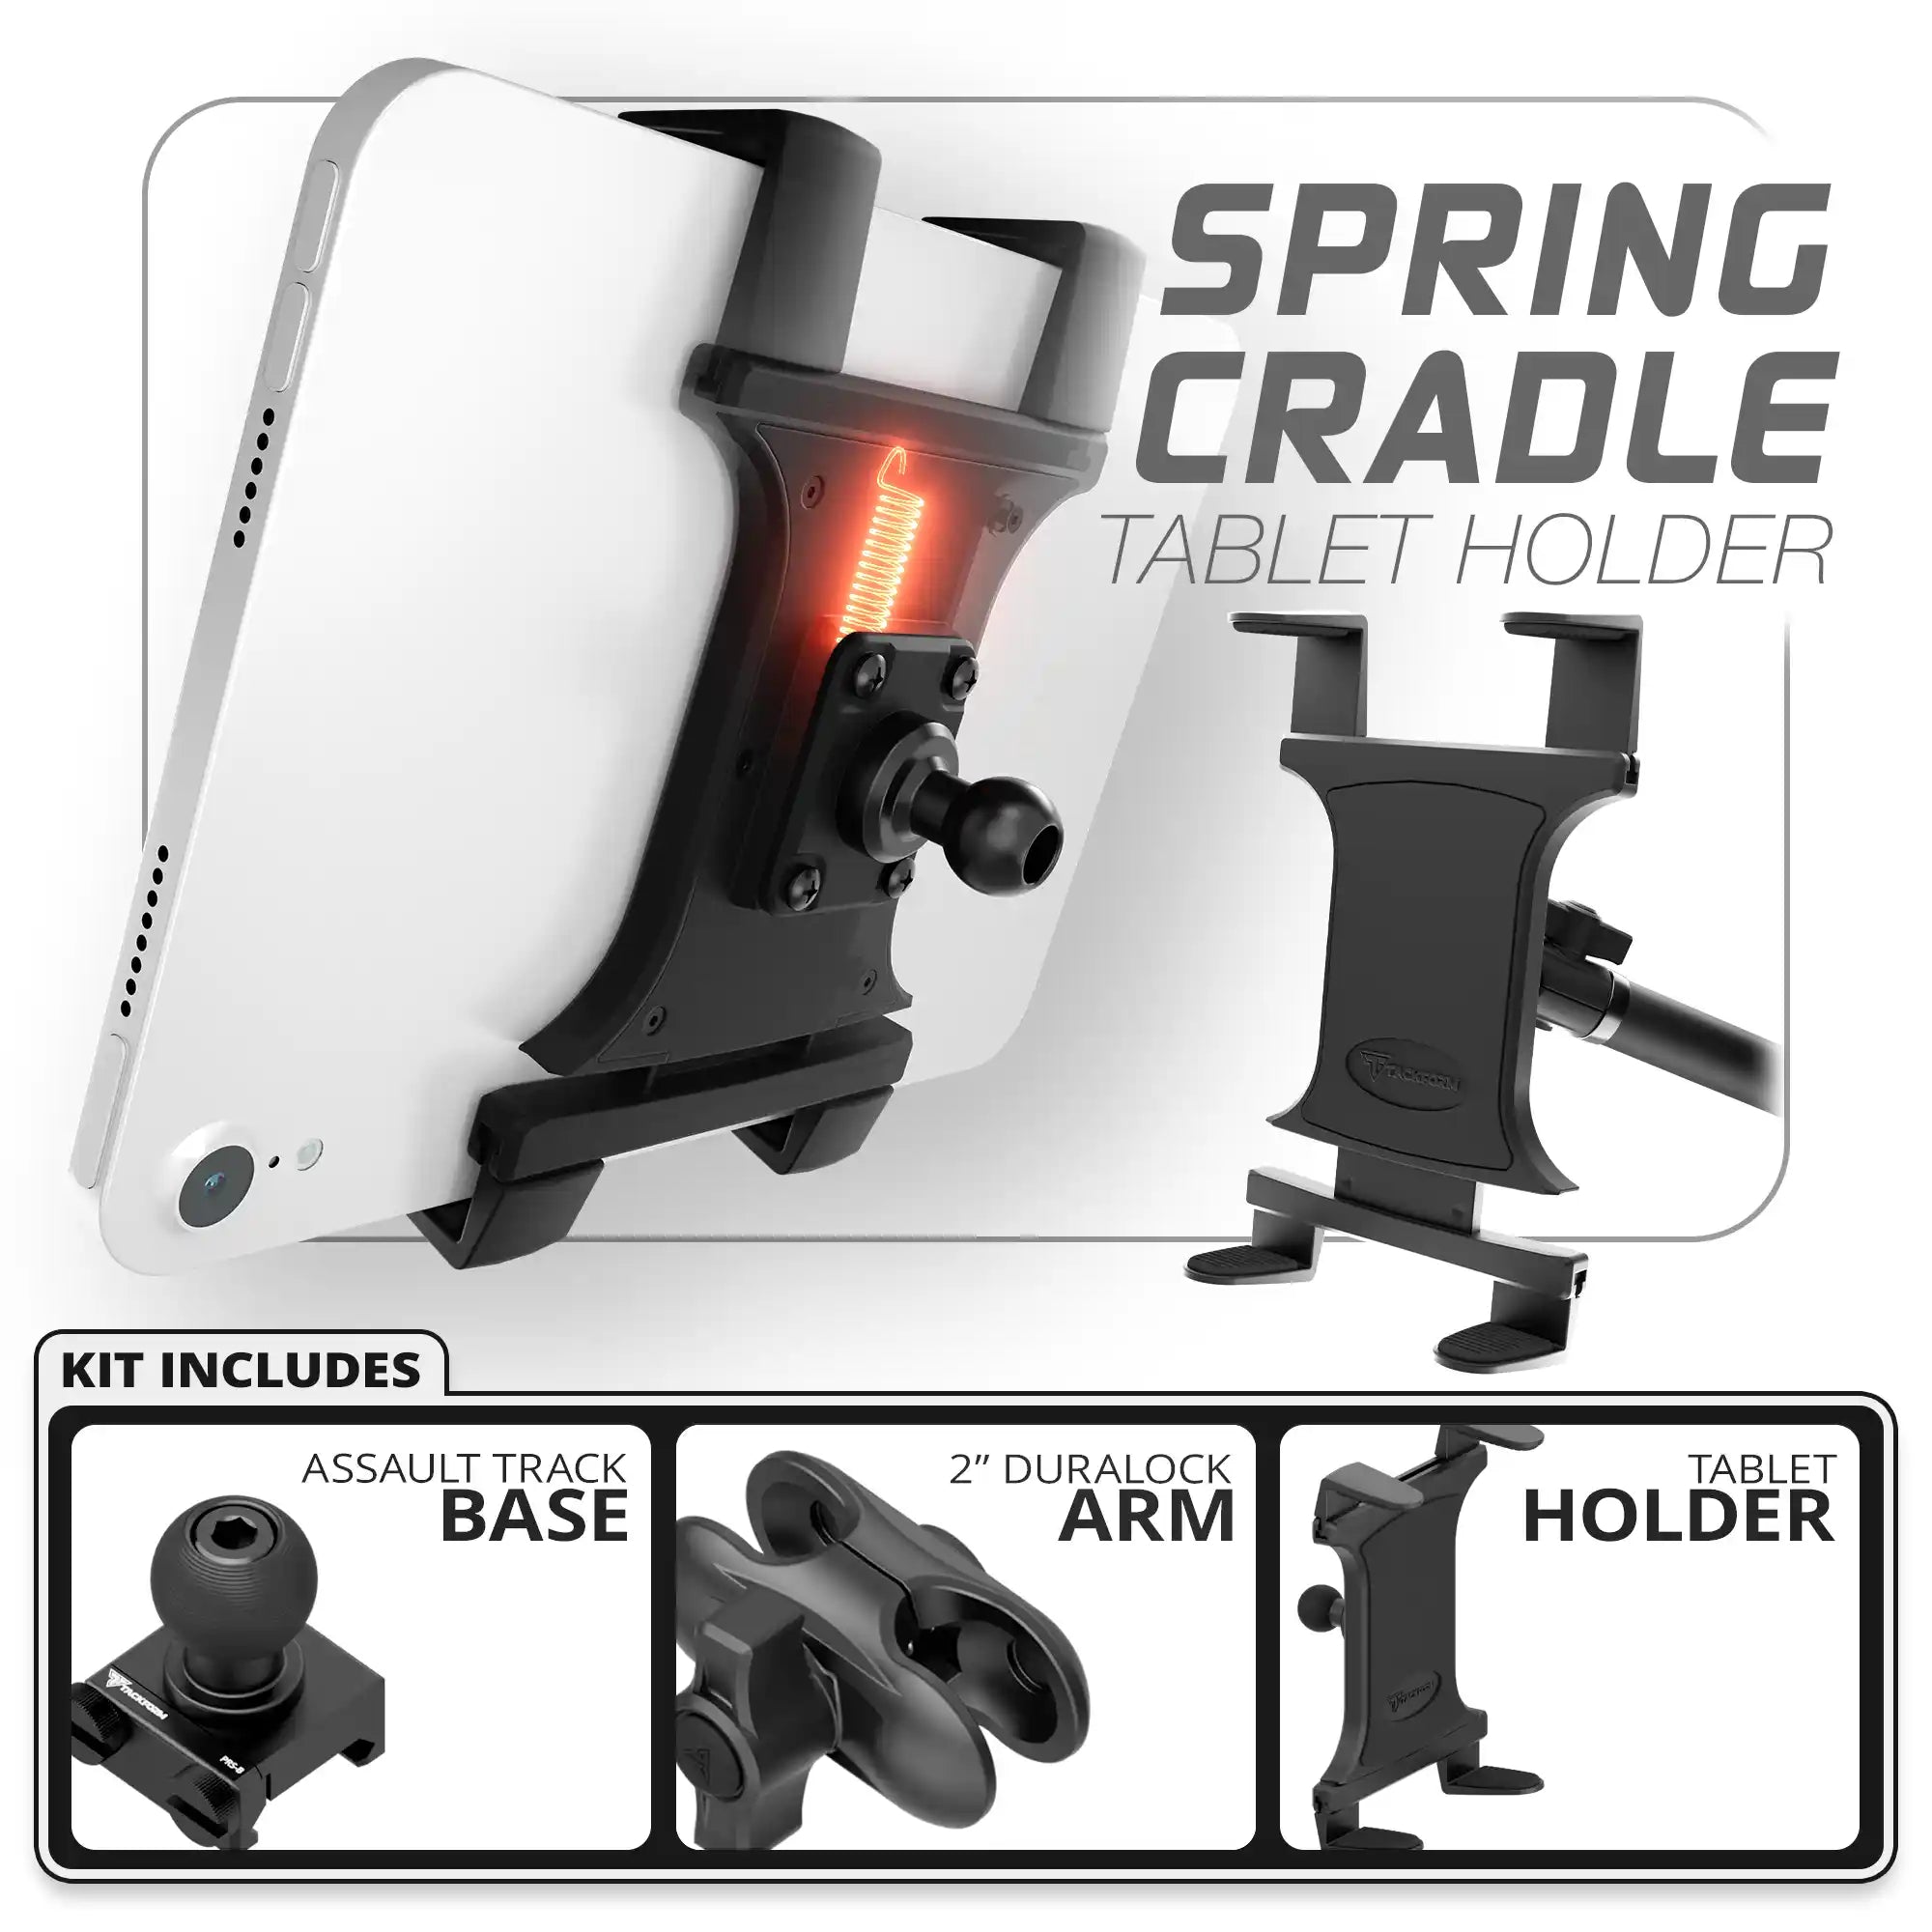 Tablet Spring Cradle | Assault Track Base | 2" DuraLock Arm